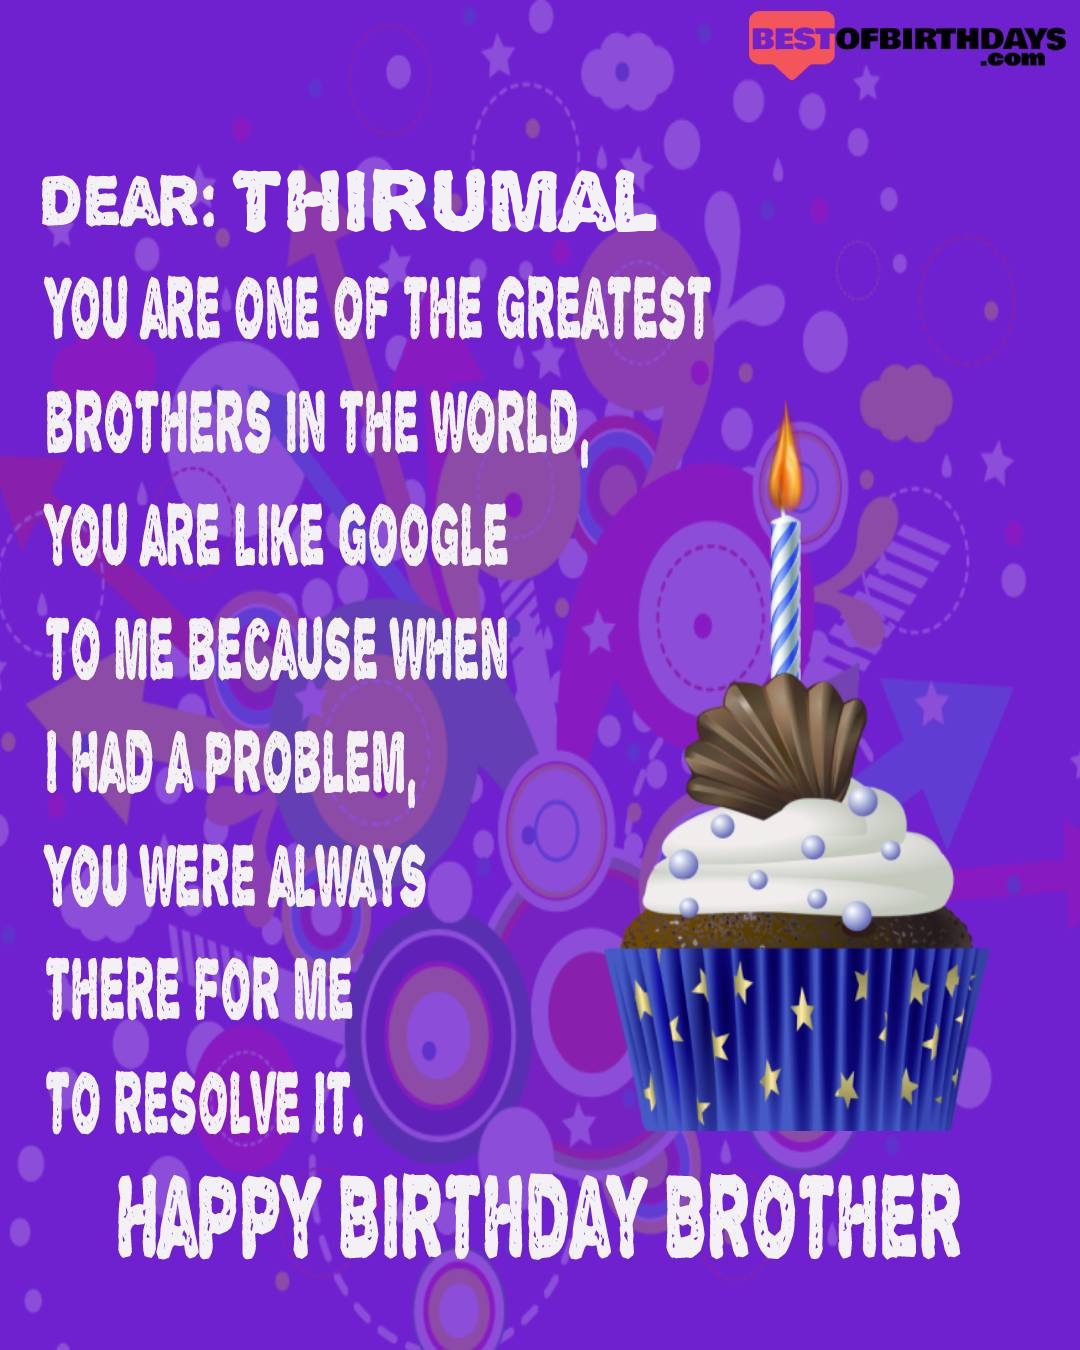 Happy birthday thirumal bhai brother bro